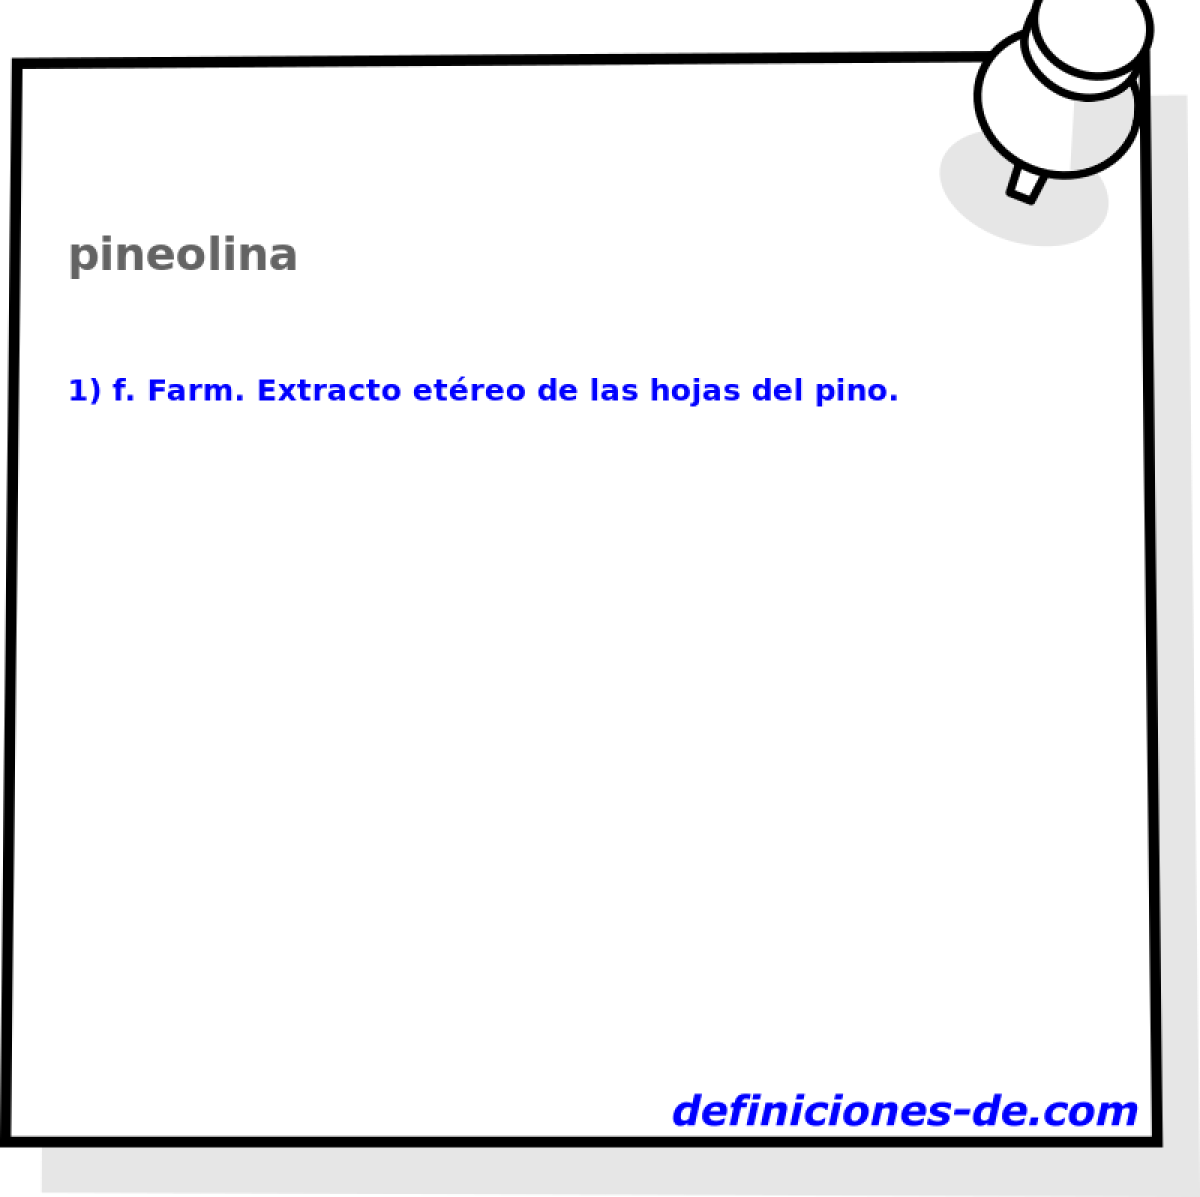 pineolina 